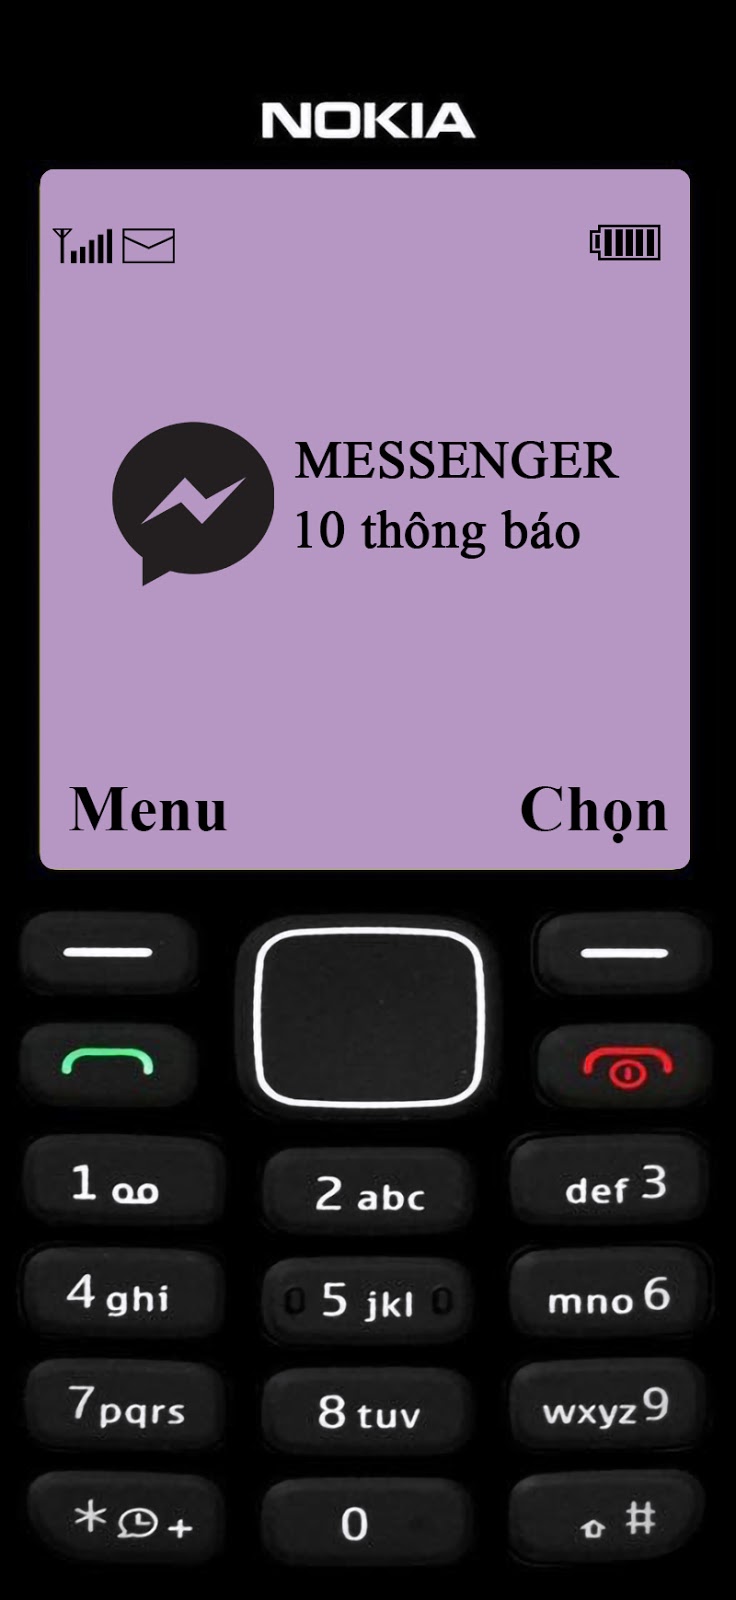 2 cách thay đổi hình nền messenger trên iPhone SIÊU DỄ | Hướng dẫn kỹ thuật